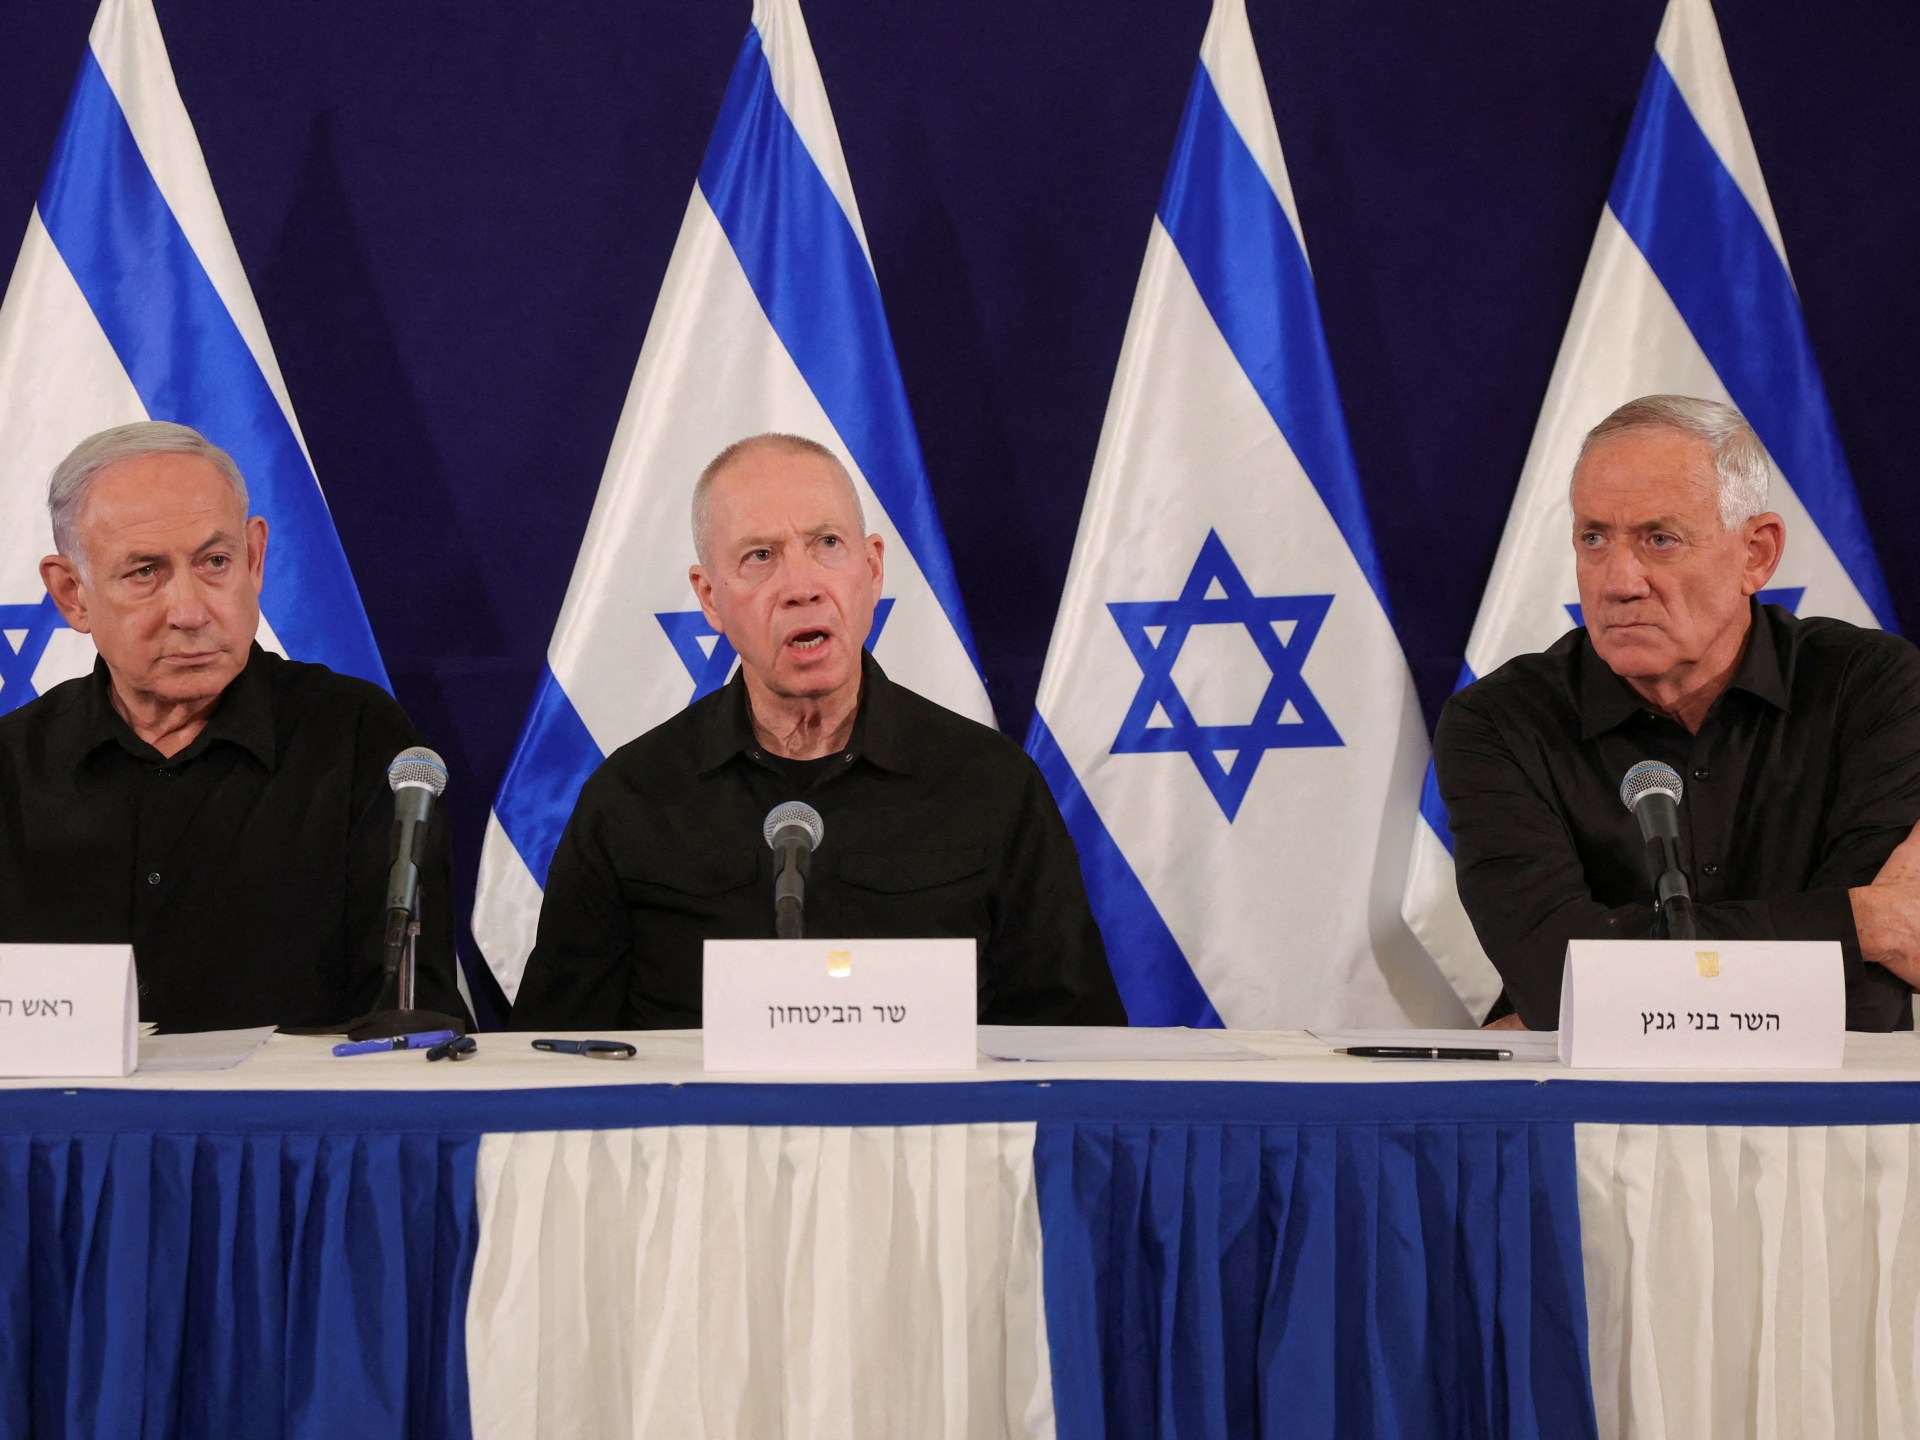 معاريف: الهوة تزداد اتساعا في أعلى الهرم السياسي بإسرائيل | أخبار جولة الصحافة – البوكس نيوز